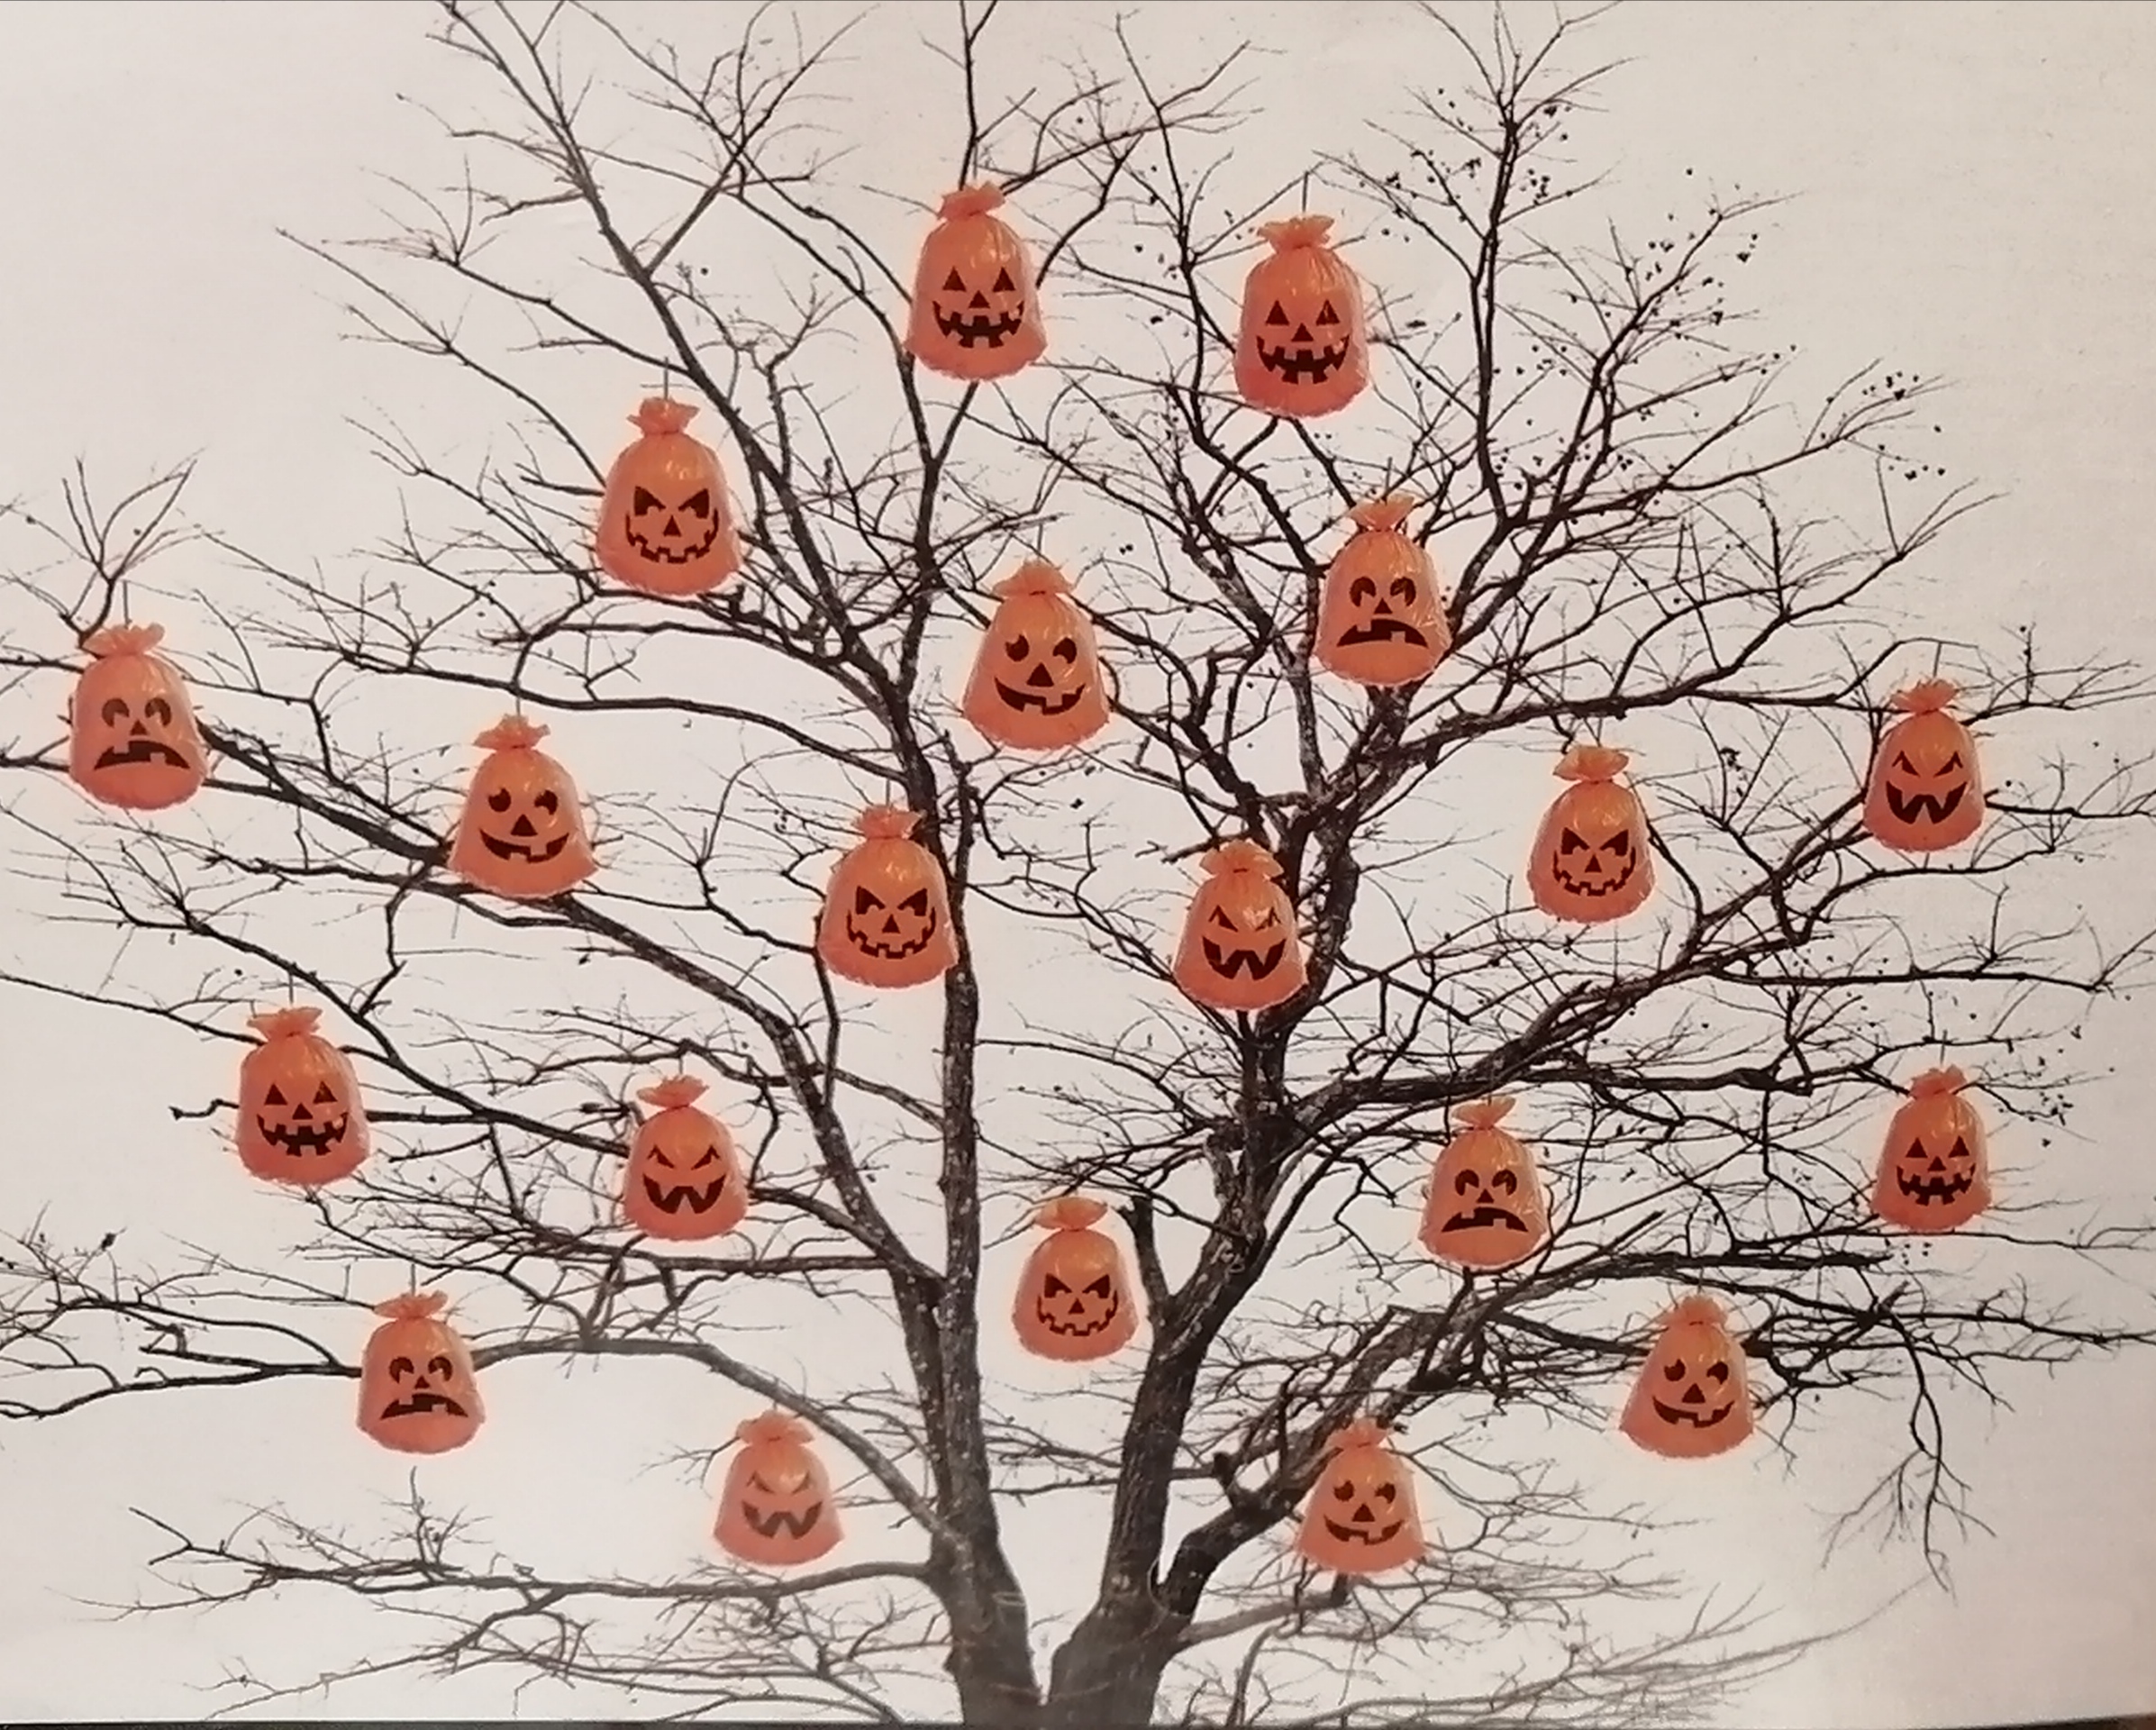 tokfej-zsakok-toltheto-dekoraciok-narancs-szinu-vidam-halloween.jpg